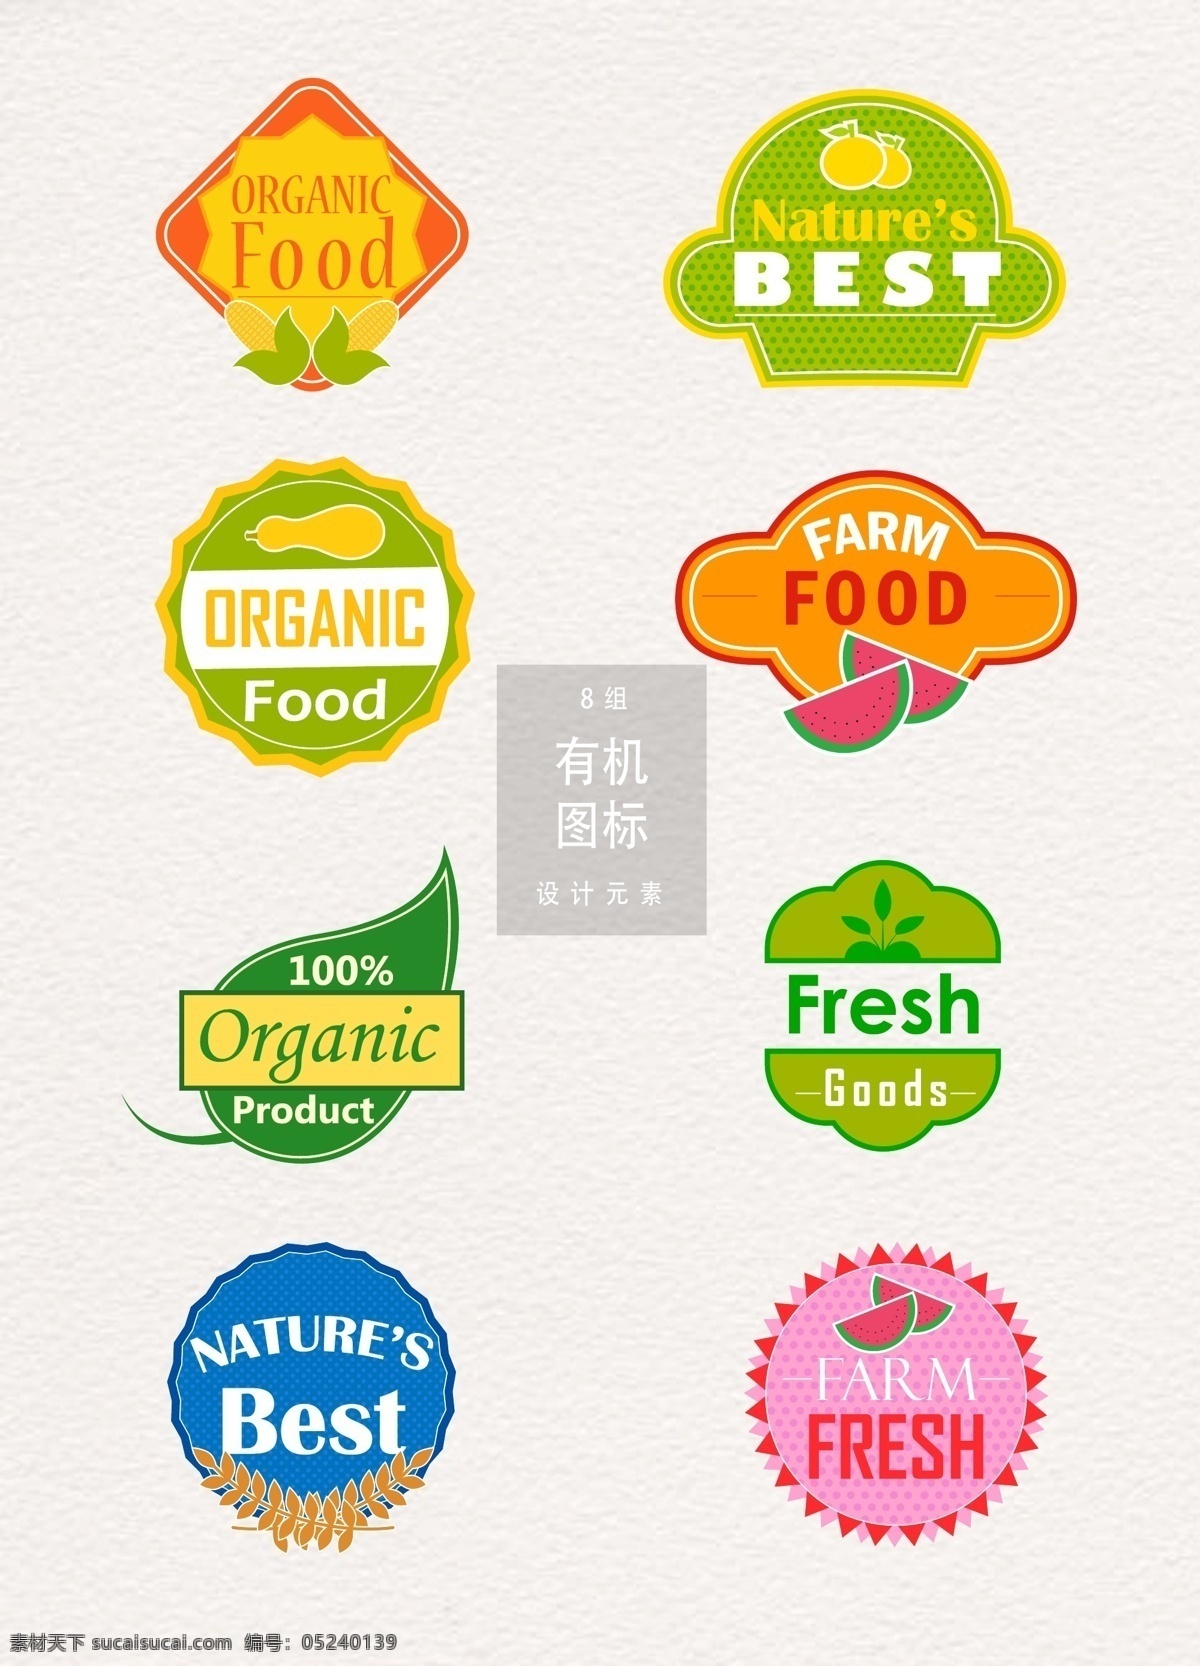 有机 食物 图标 设计素材 图标设计 矢量素材 天然 叶子 ai素材 有机食物图标 有机食物 logo 绿色食物